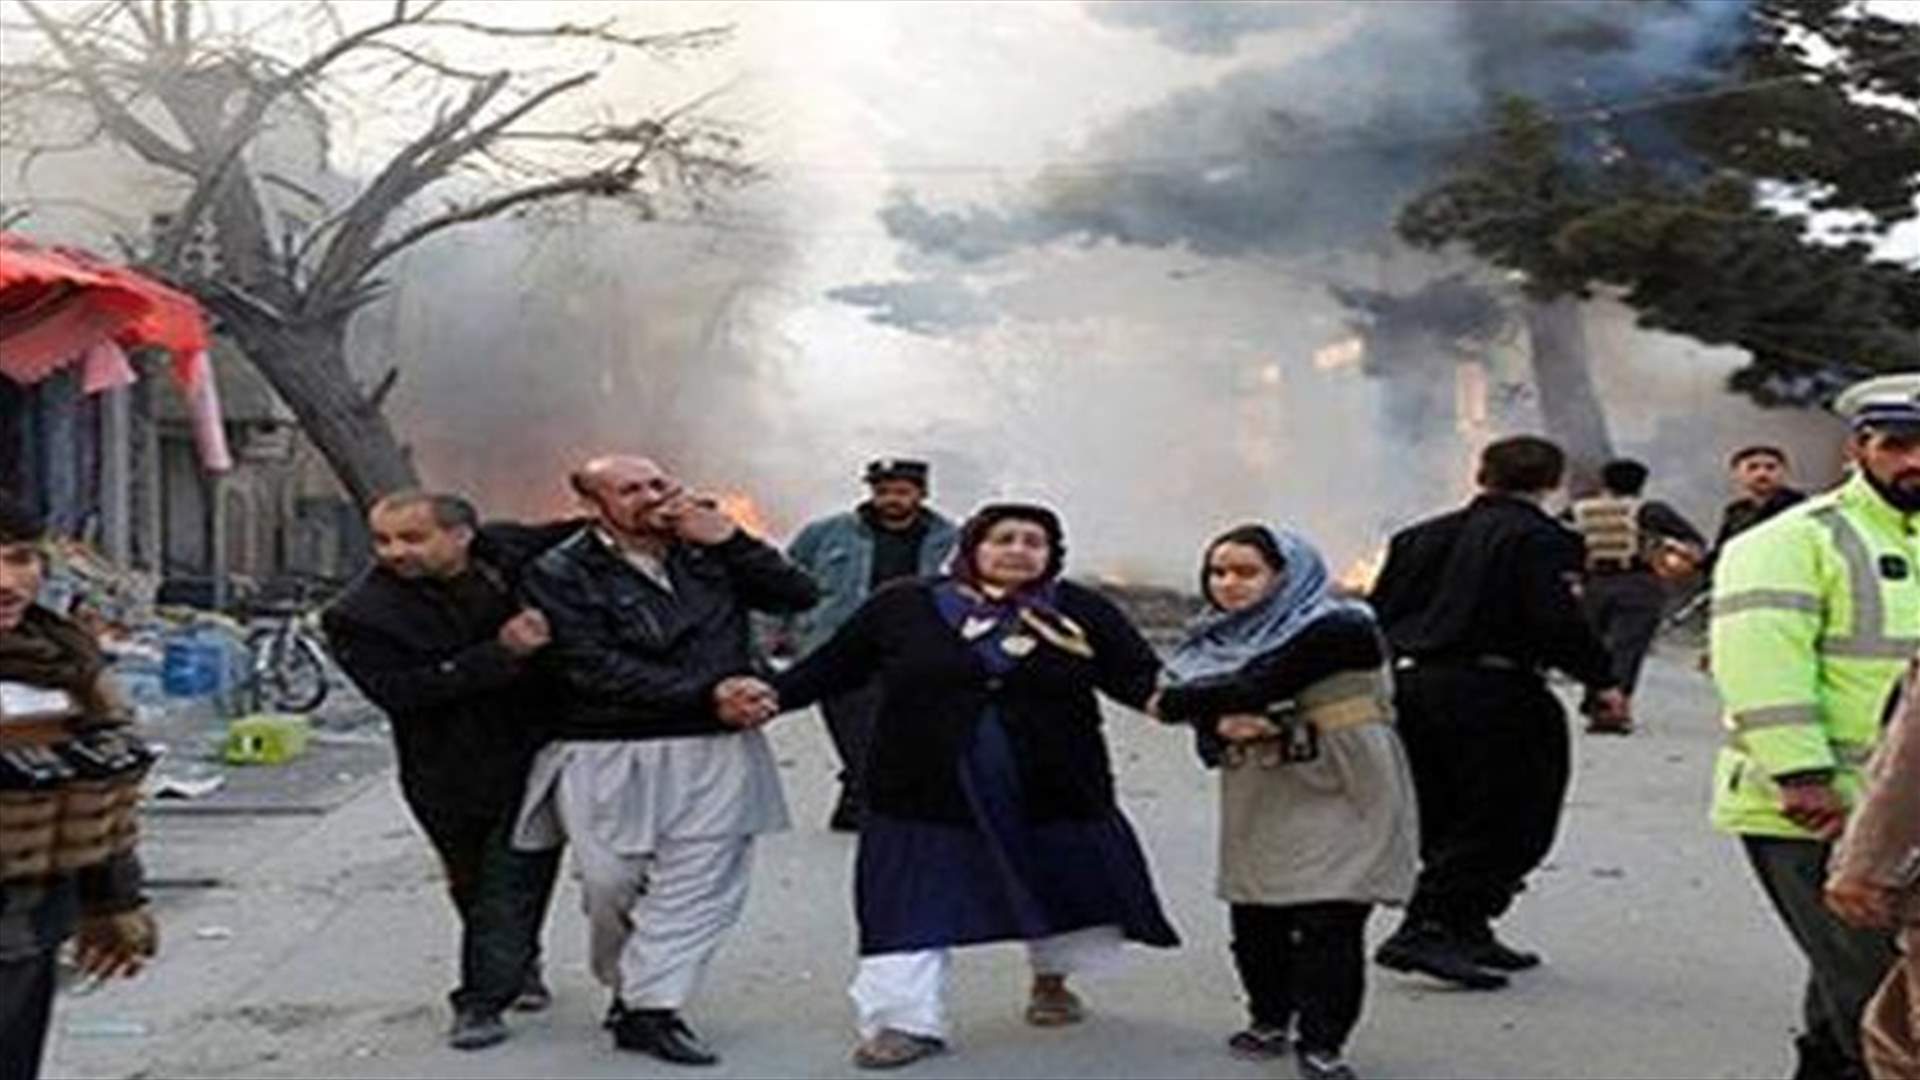 سقوط صاروخ في حي السفارات في كابول